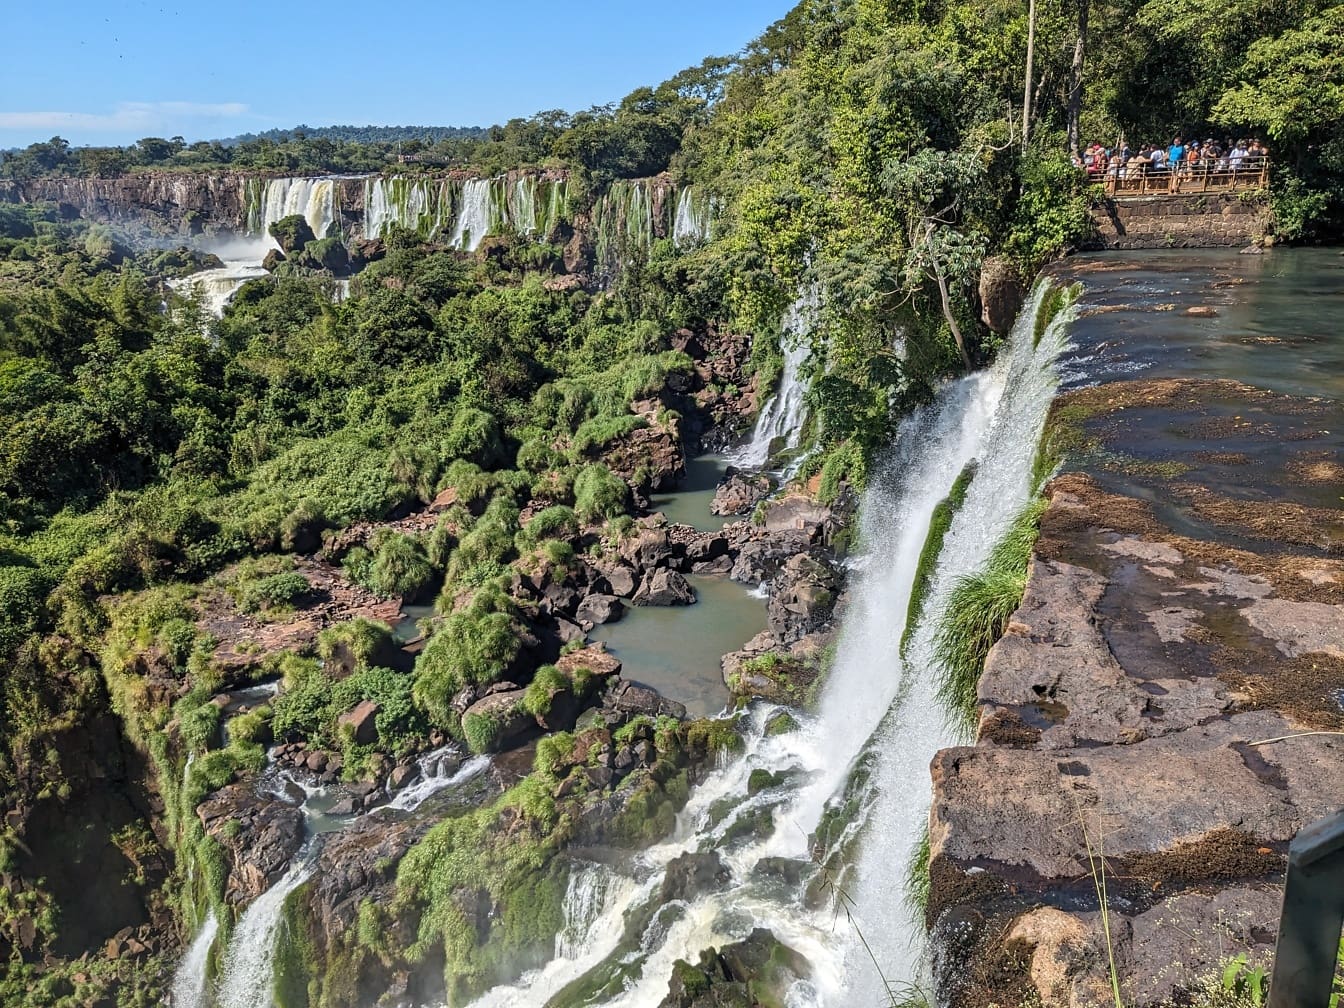 Rìa thác nước trên sông Iguazu ở Argentina, một điểm thu hút khách du lịch nổi tiếng